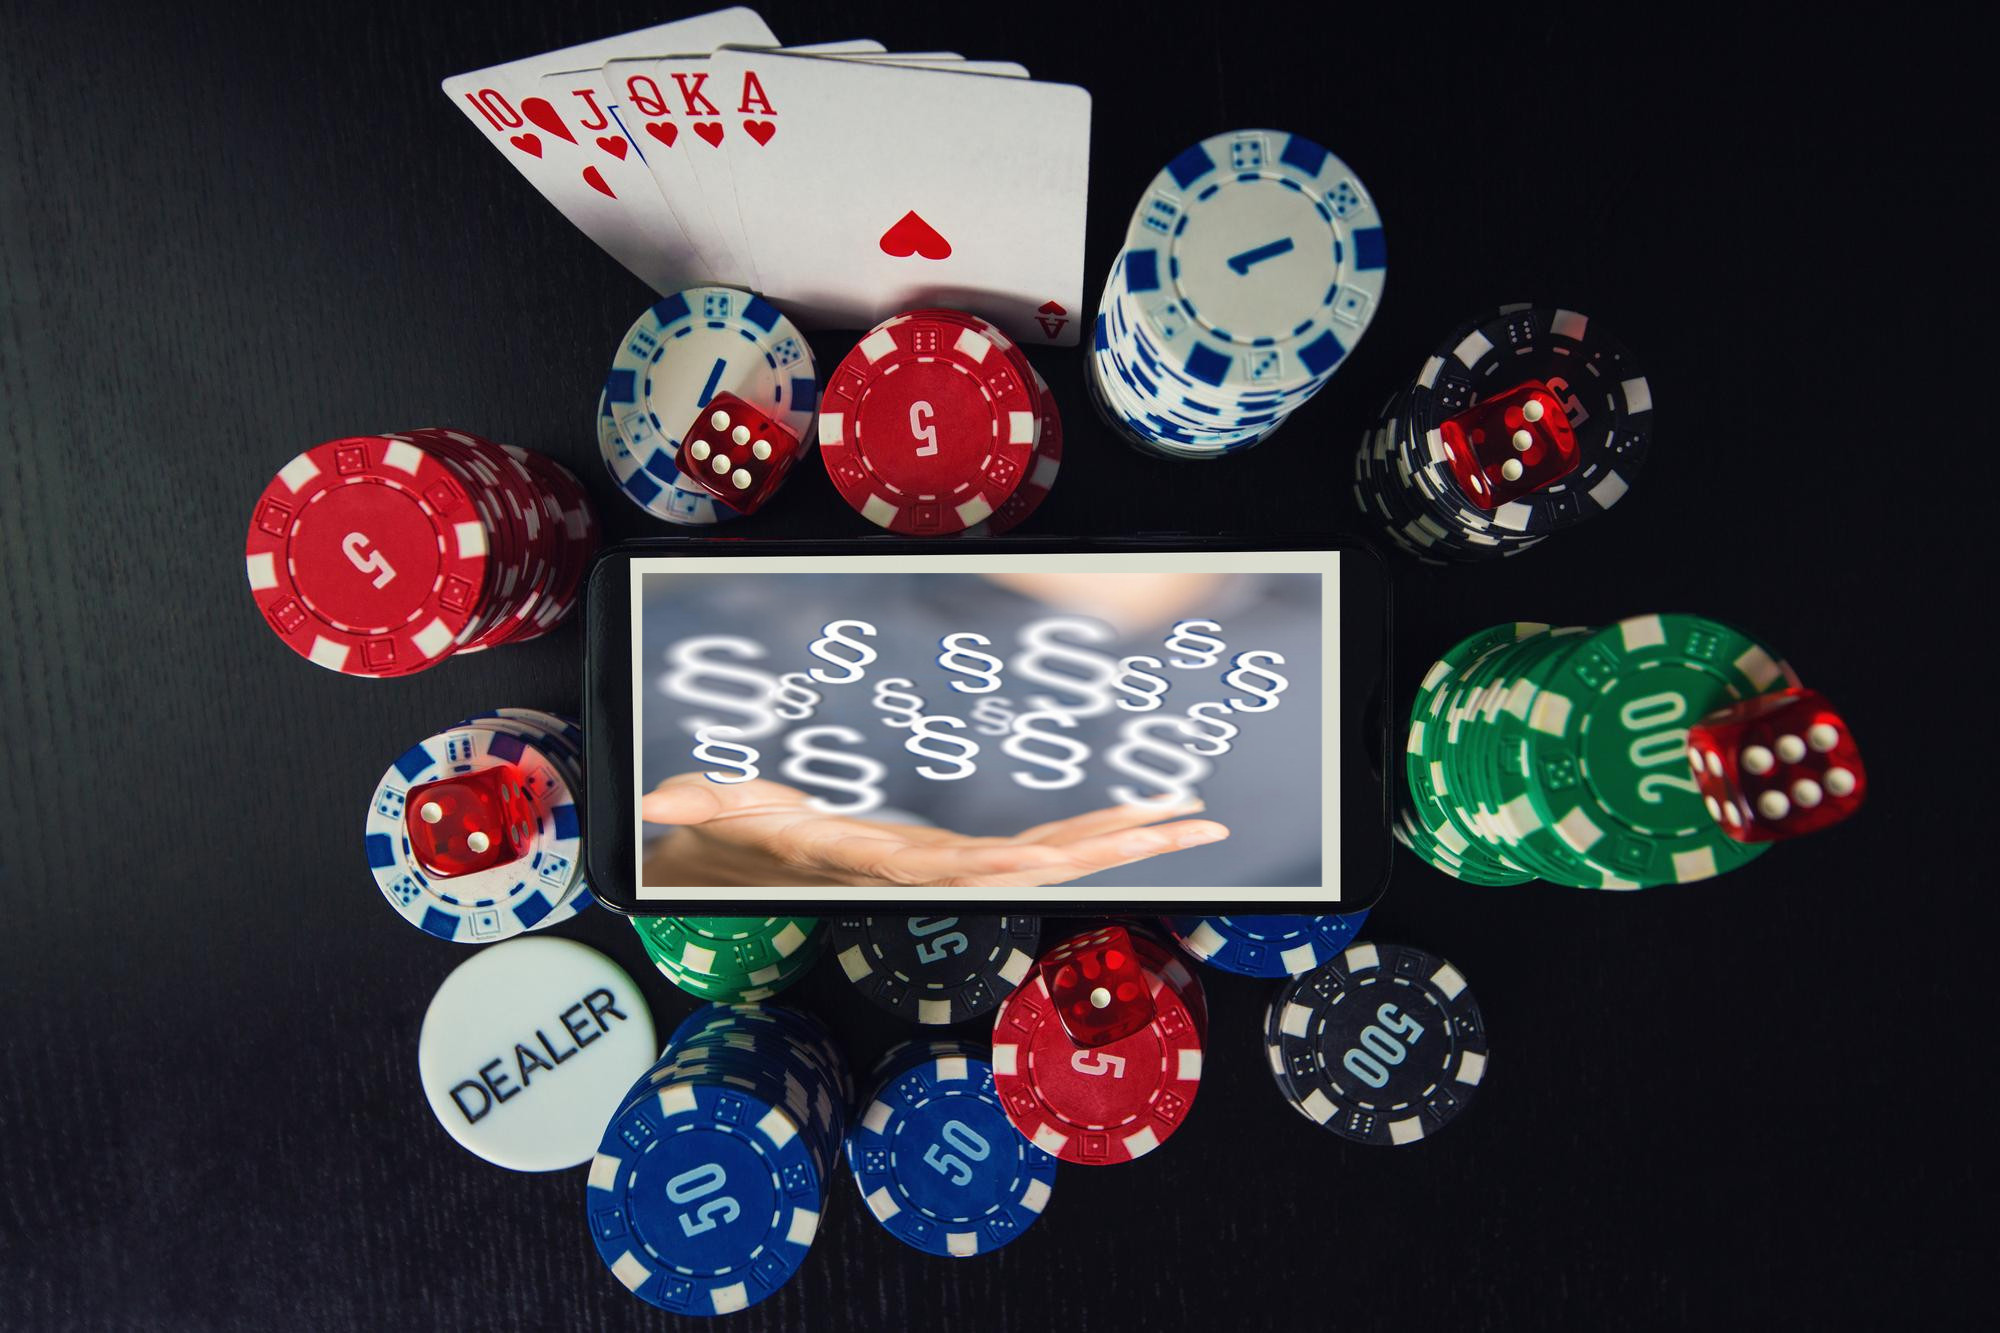 Online-Casinos müssen Verluste zurückzahlen: Mehr als 70 Urteile und Beschlüsse zugunsten von Spielern